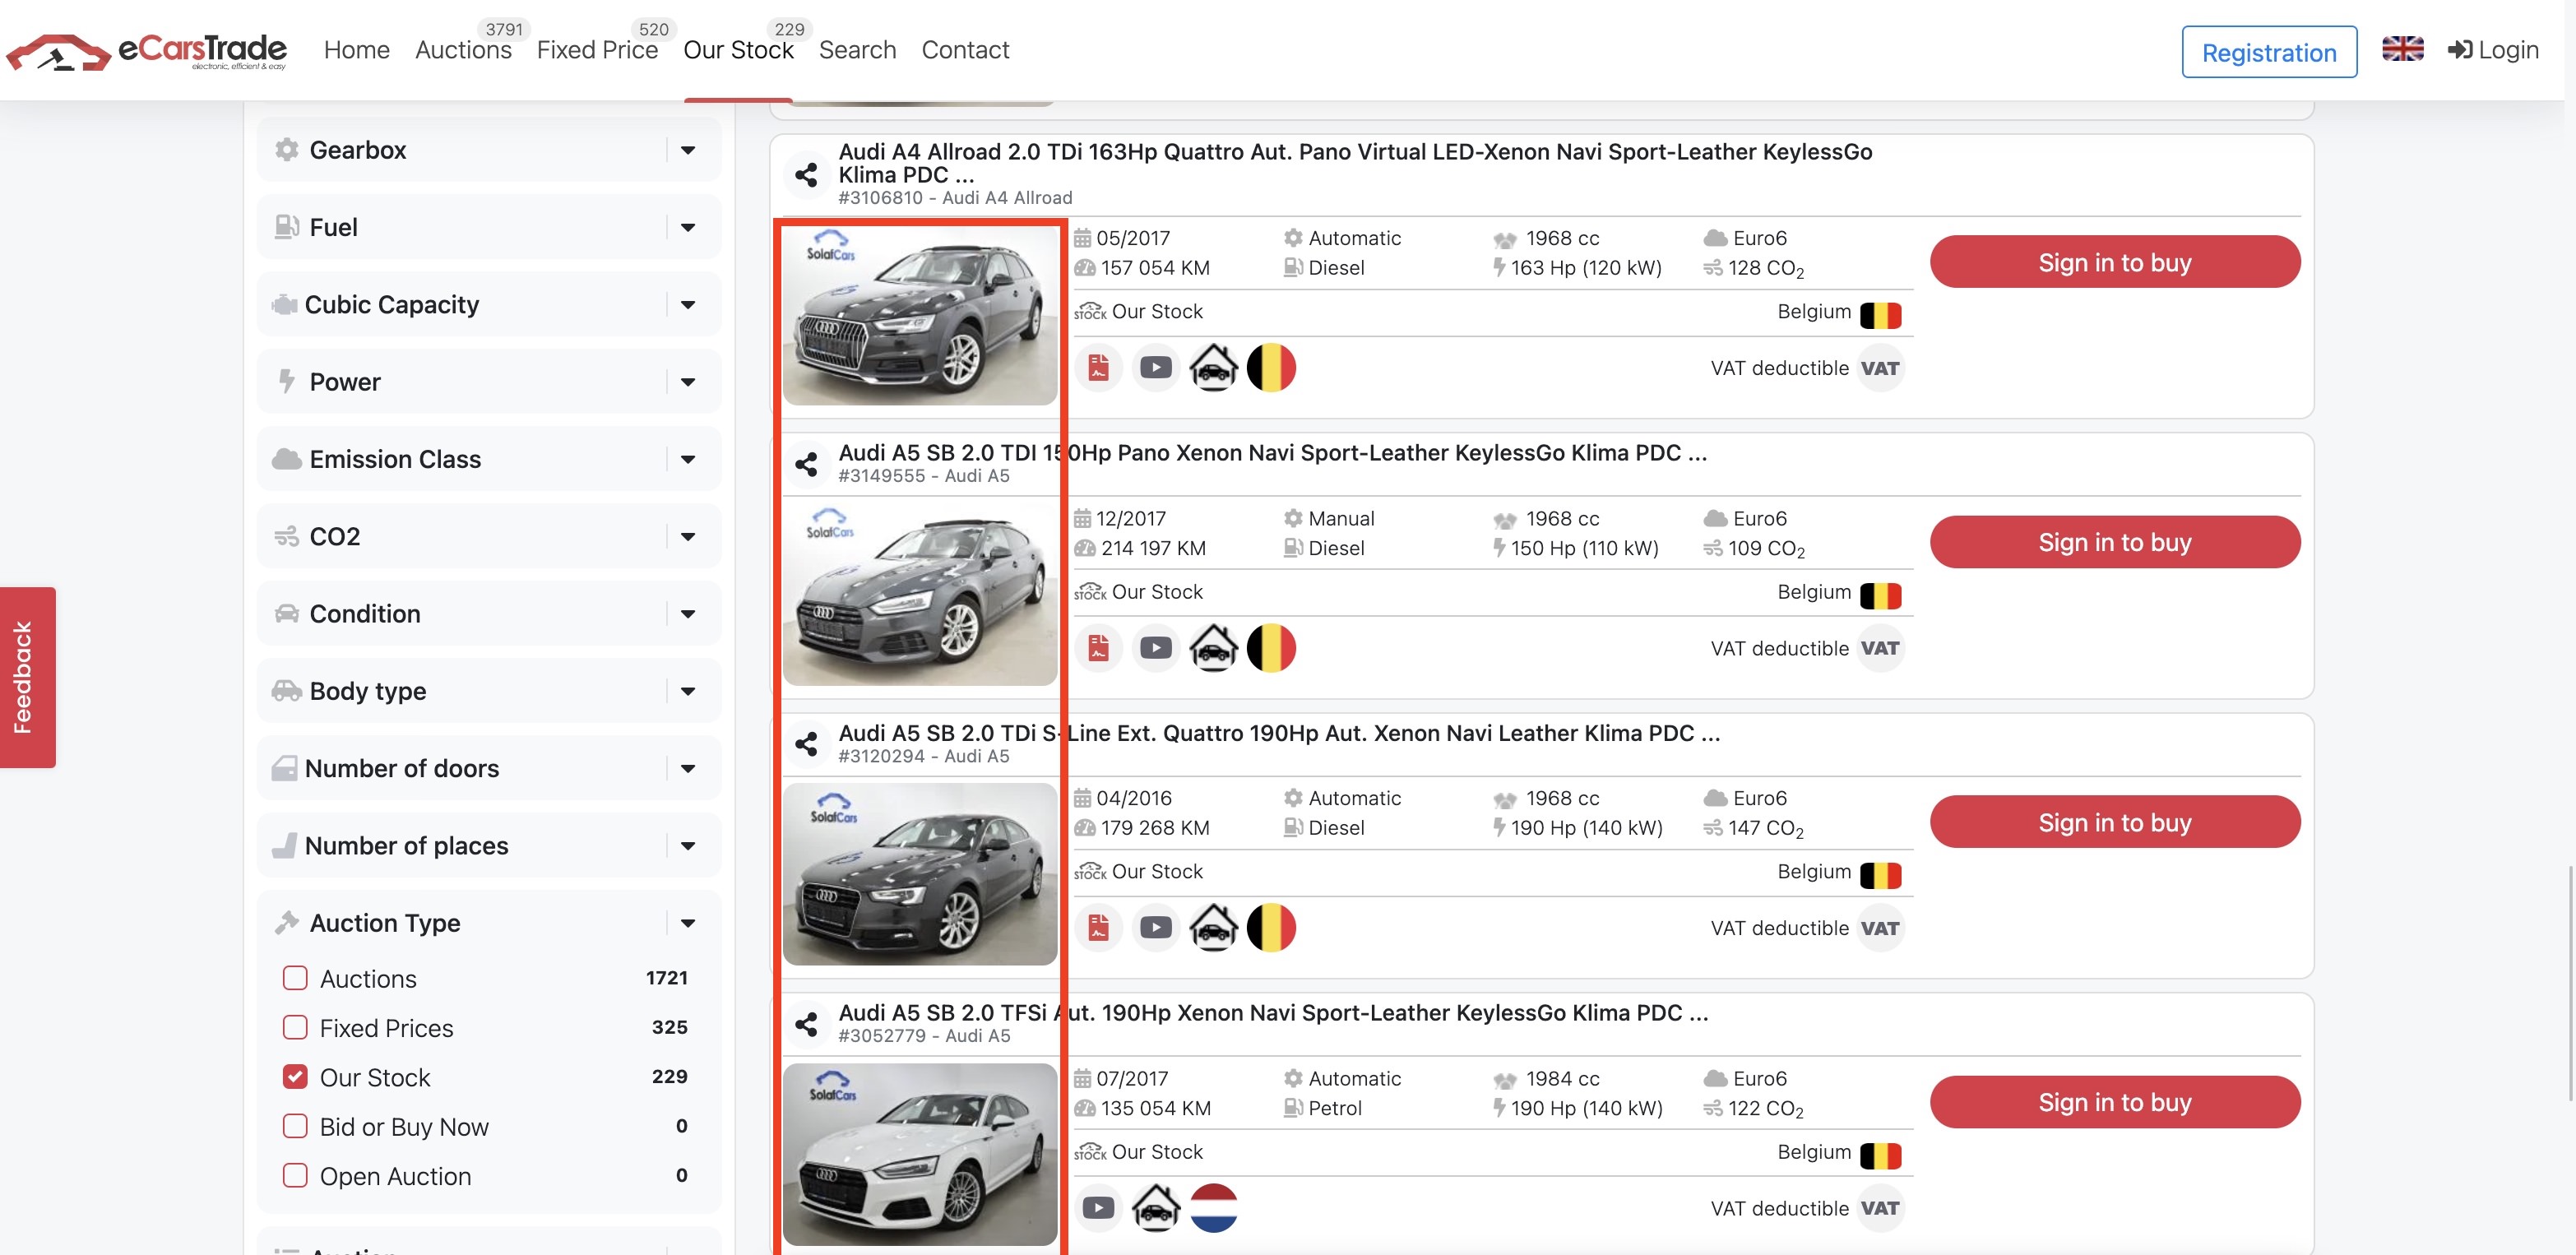 Снимак екрана еЦарсТраде са веб странице који приказује фотографије аутомобила